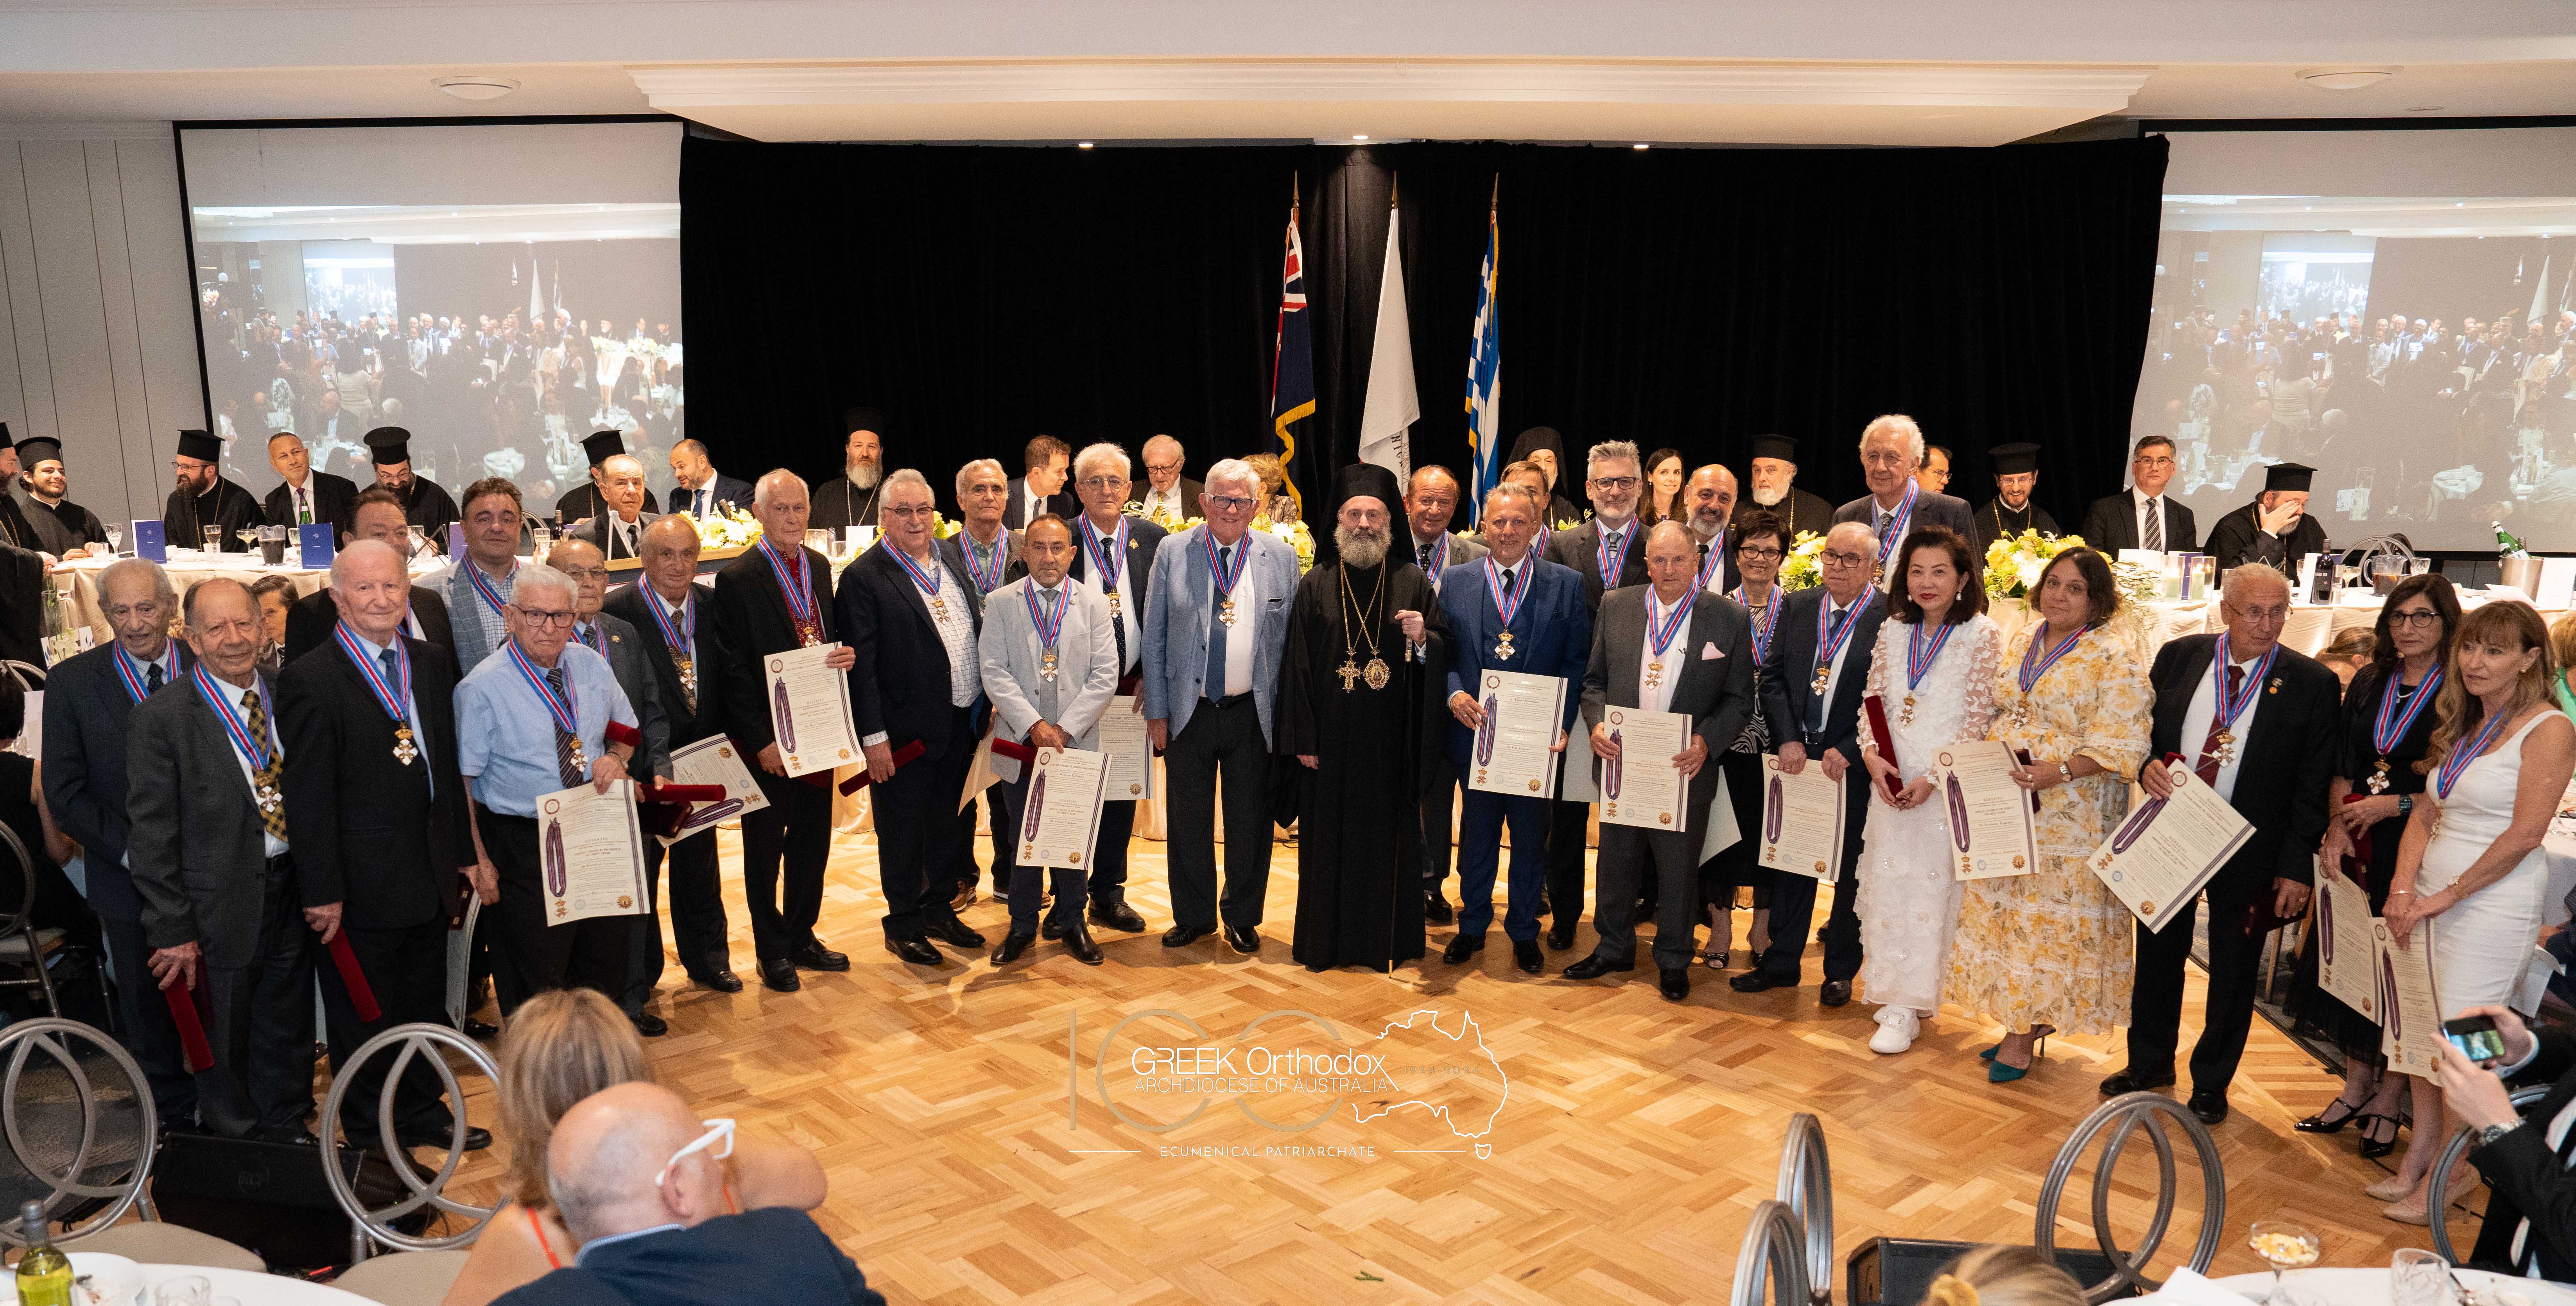 Οι 61 τιμηθέντες από τον Αρχιεπίσκοπο Αυστραλίας με το παράσημο του Τάγματος των Φιλοχρίστων